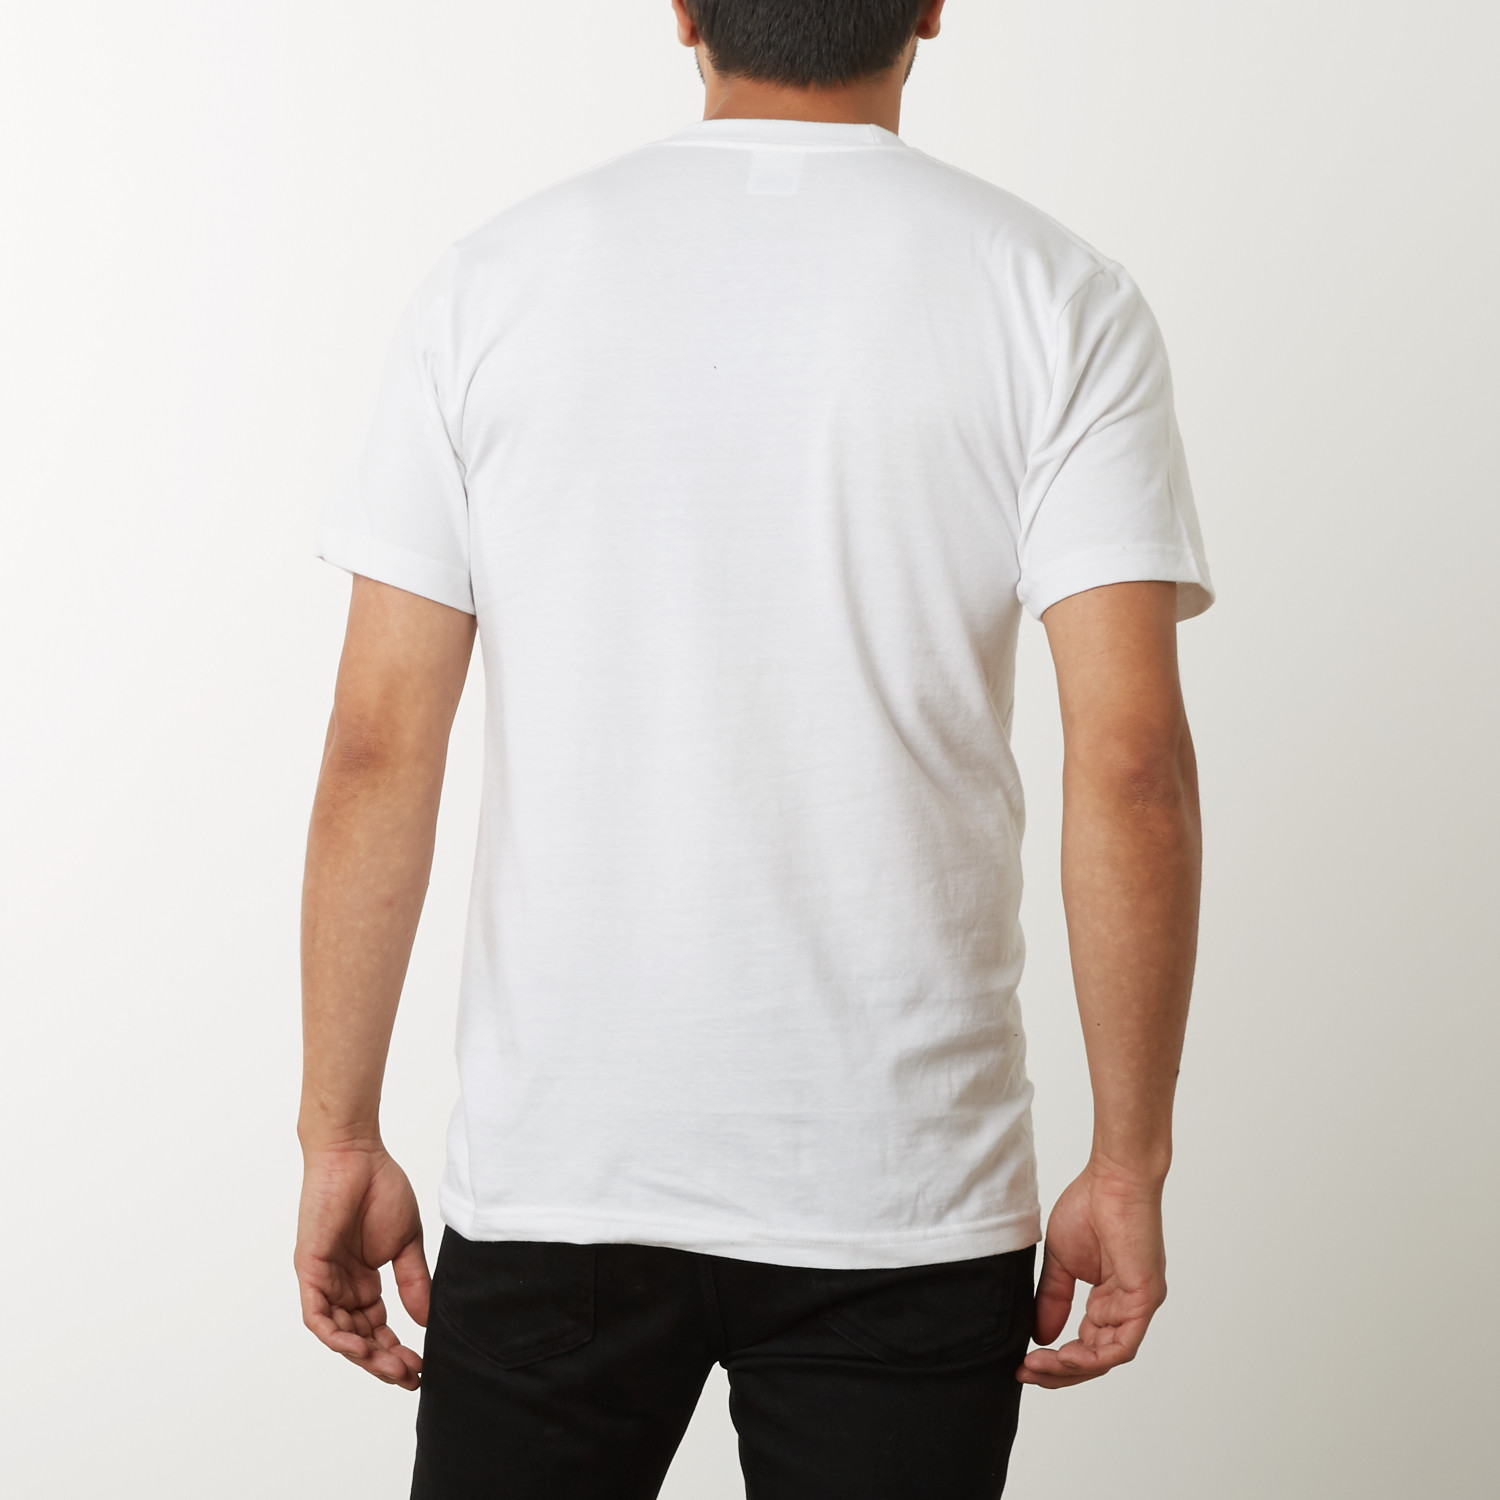 Basic Man Tee-Shirt Blanc - Blank T-Shirt - Lapolemik - LPMK